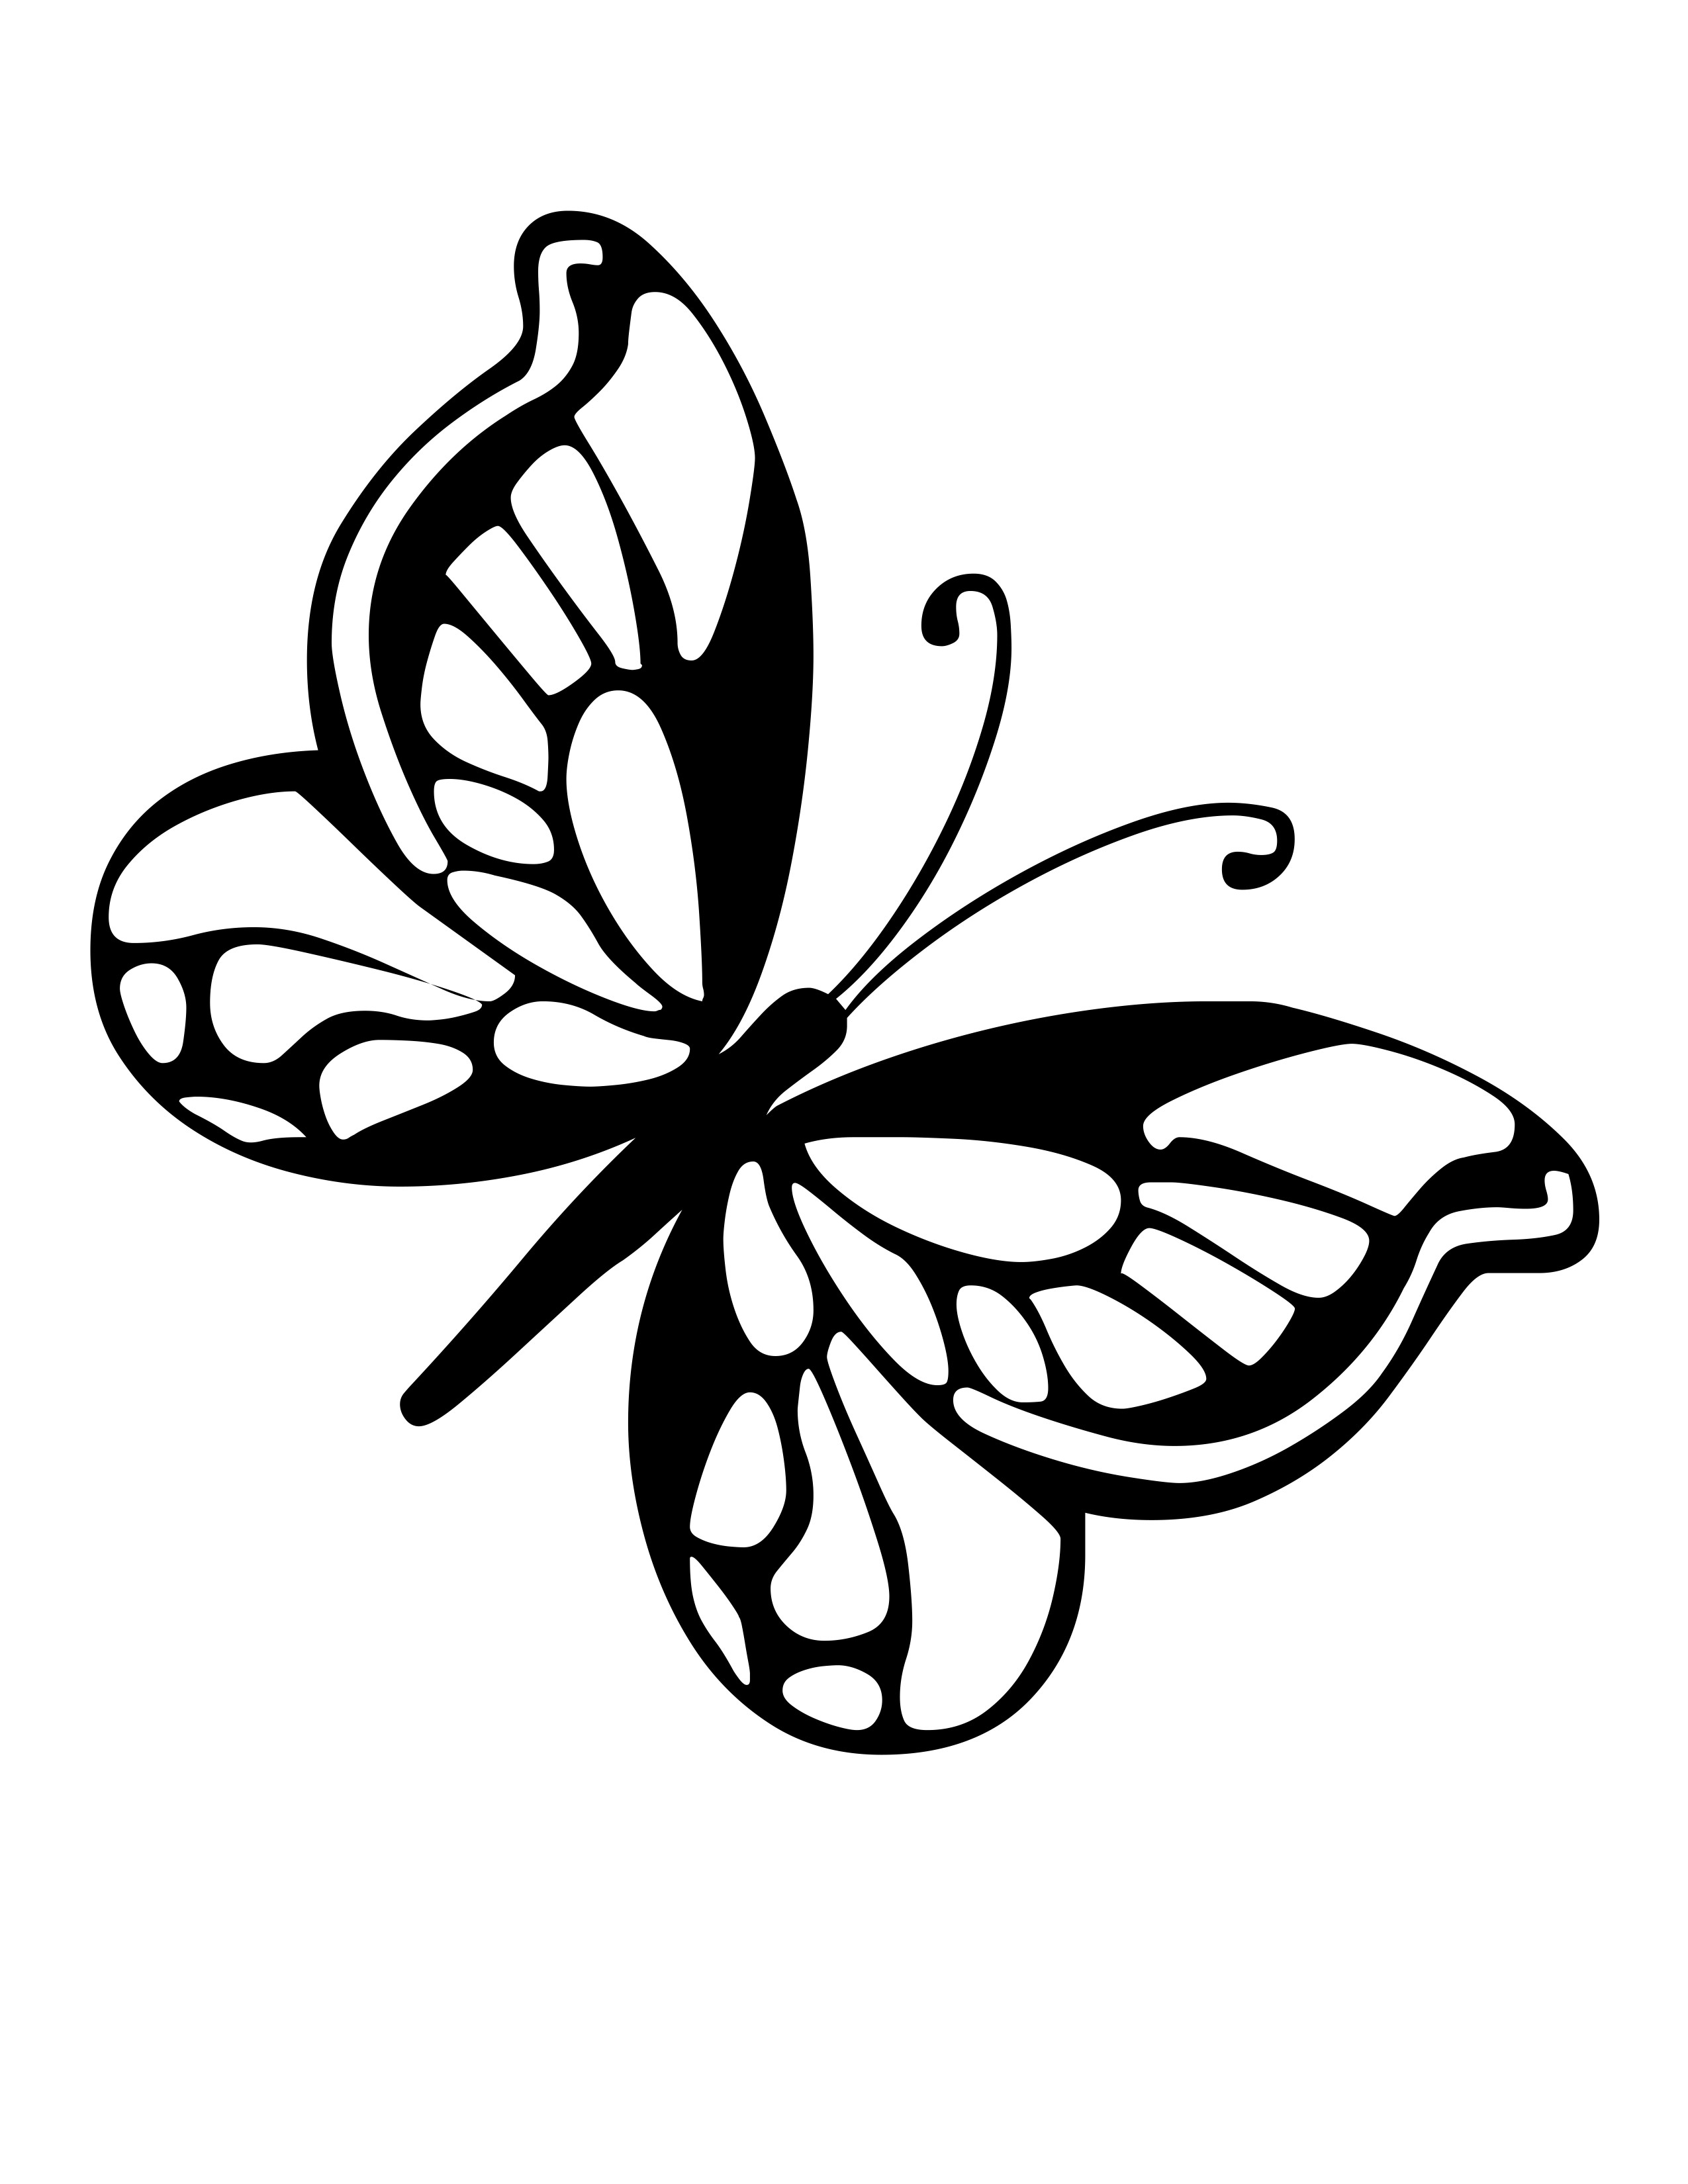 butterfly line art - ClipArt Best - ClipArt Best